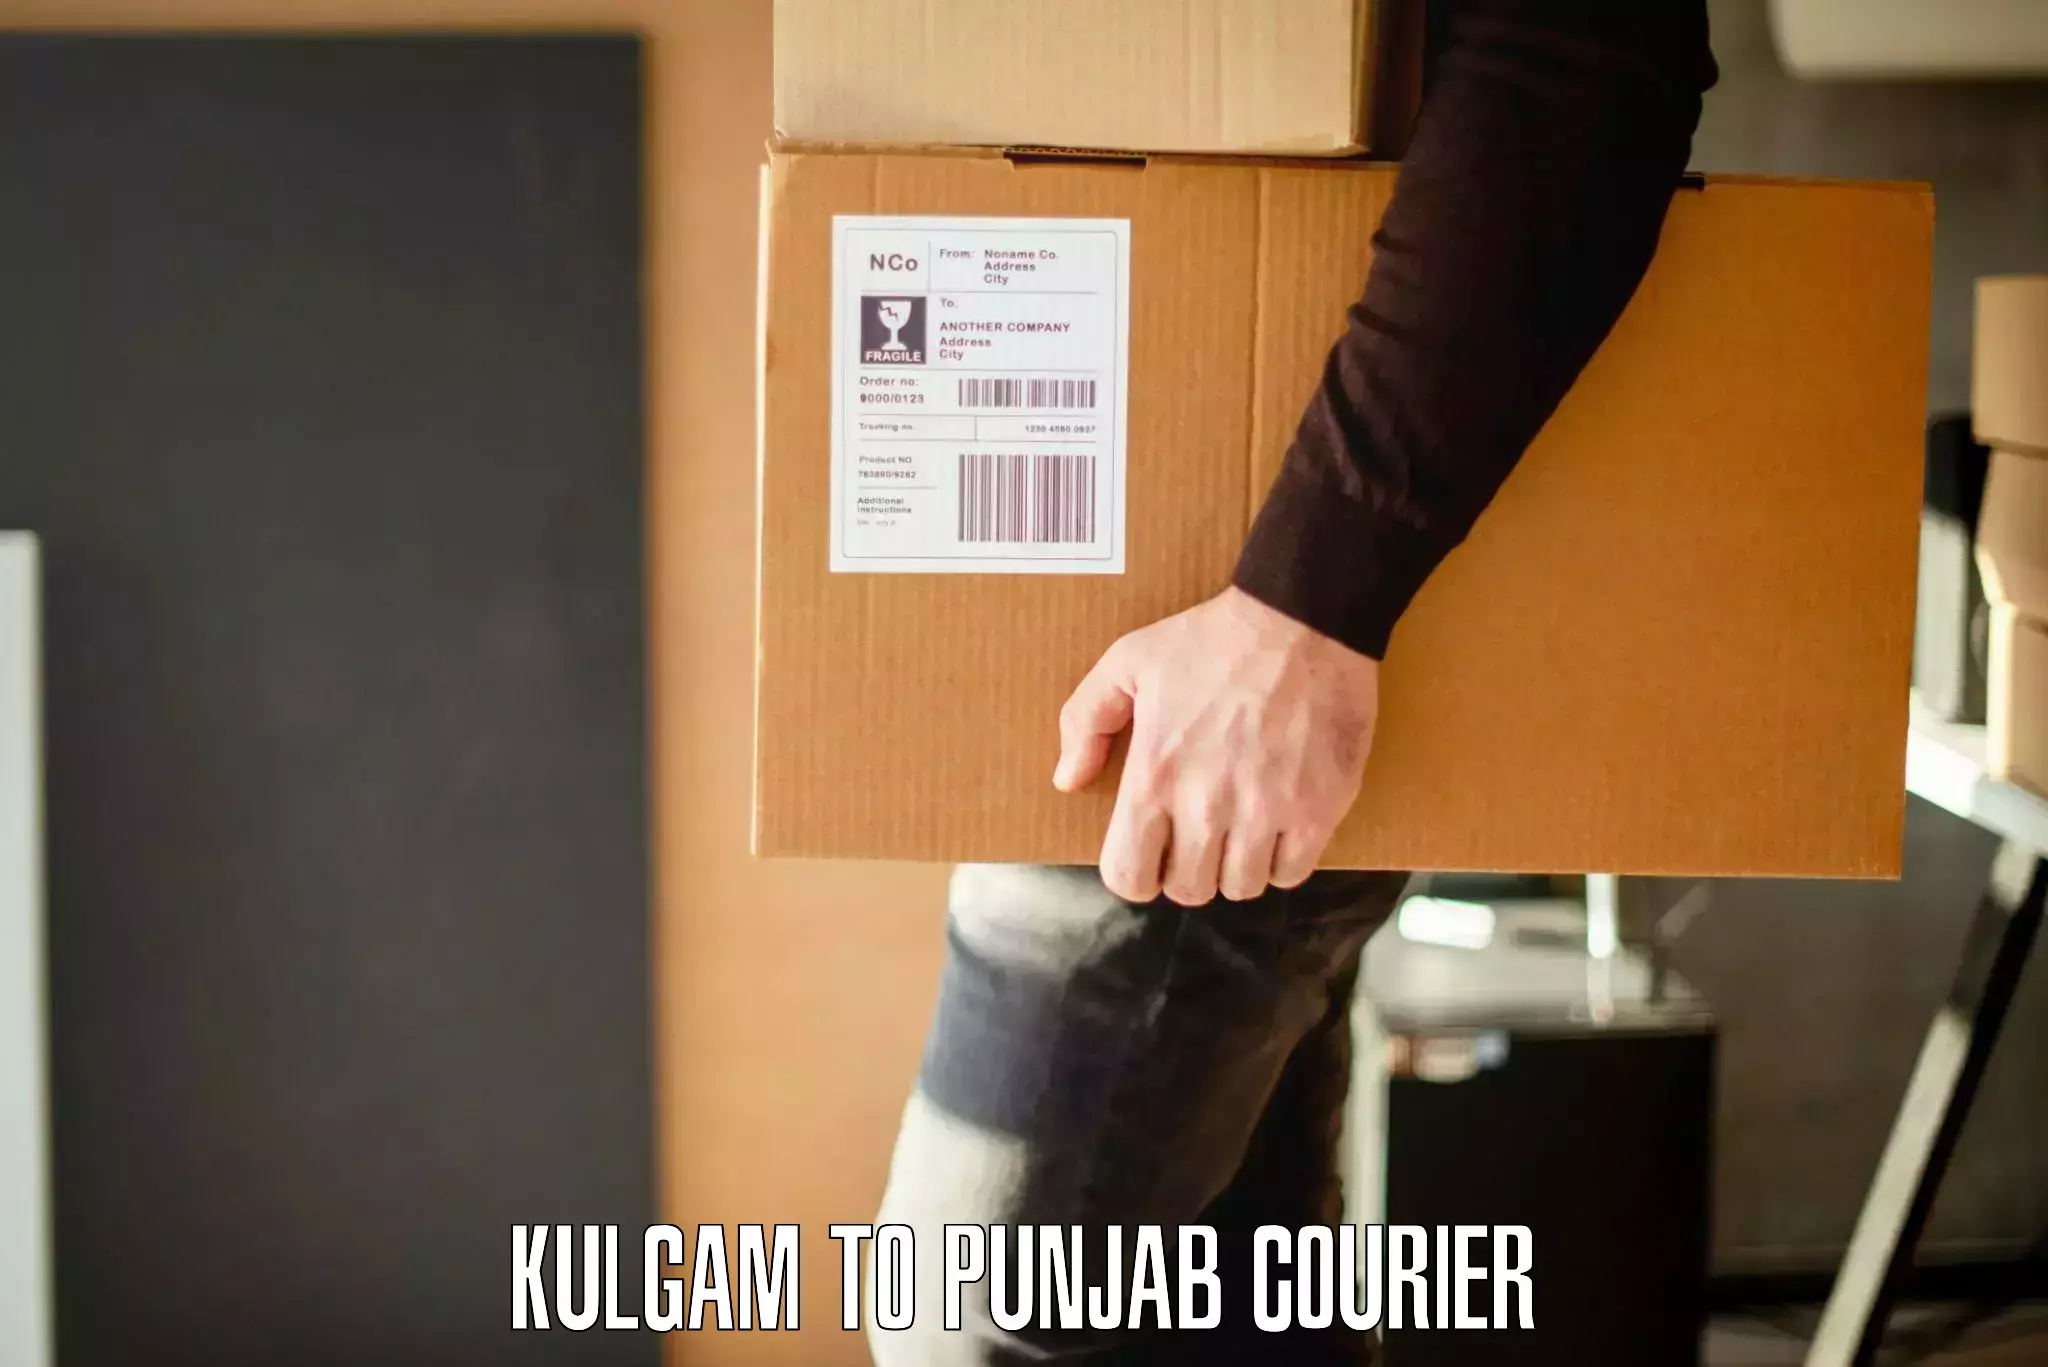 Furniture moving service Kulgam to Punjab